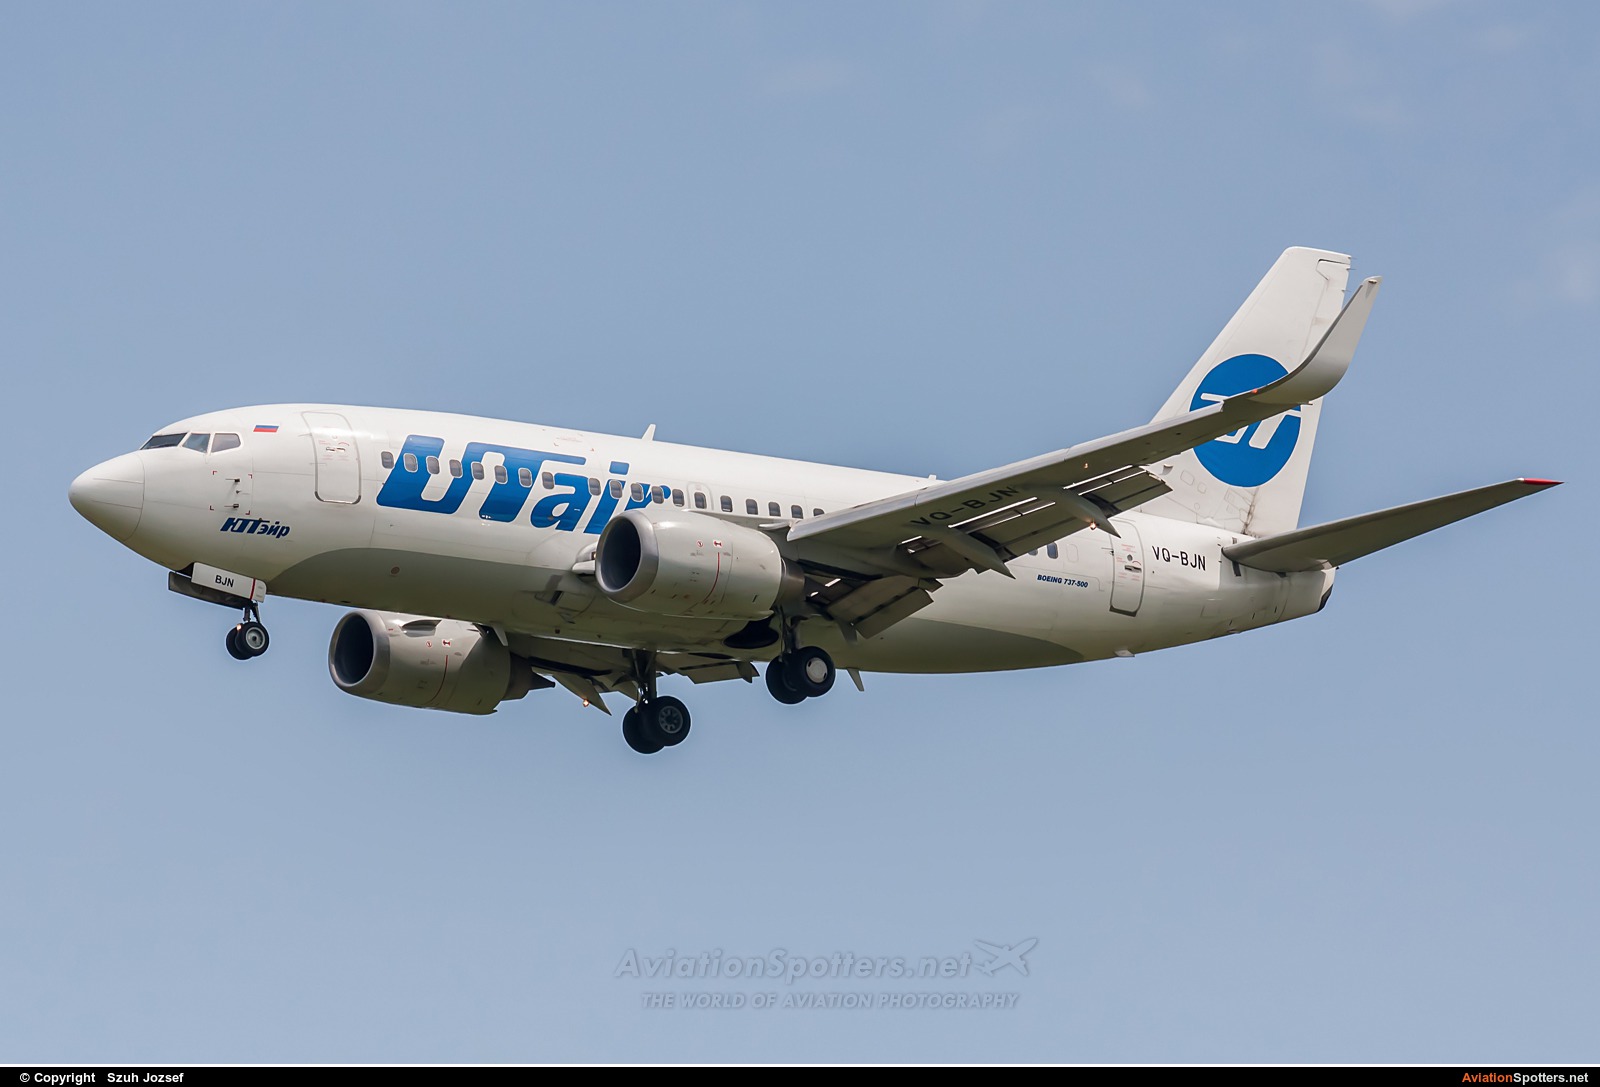 UTair  -  737-500  (VQ-BJN) By Szuh Jozsef (szuh jozsef)